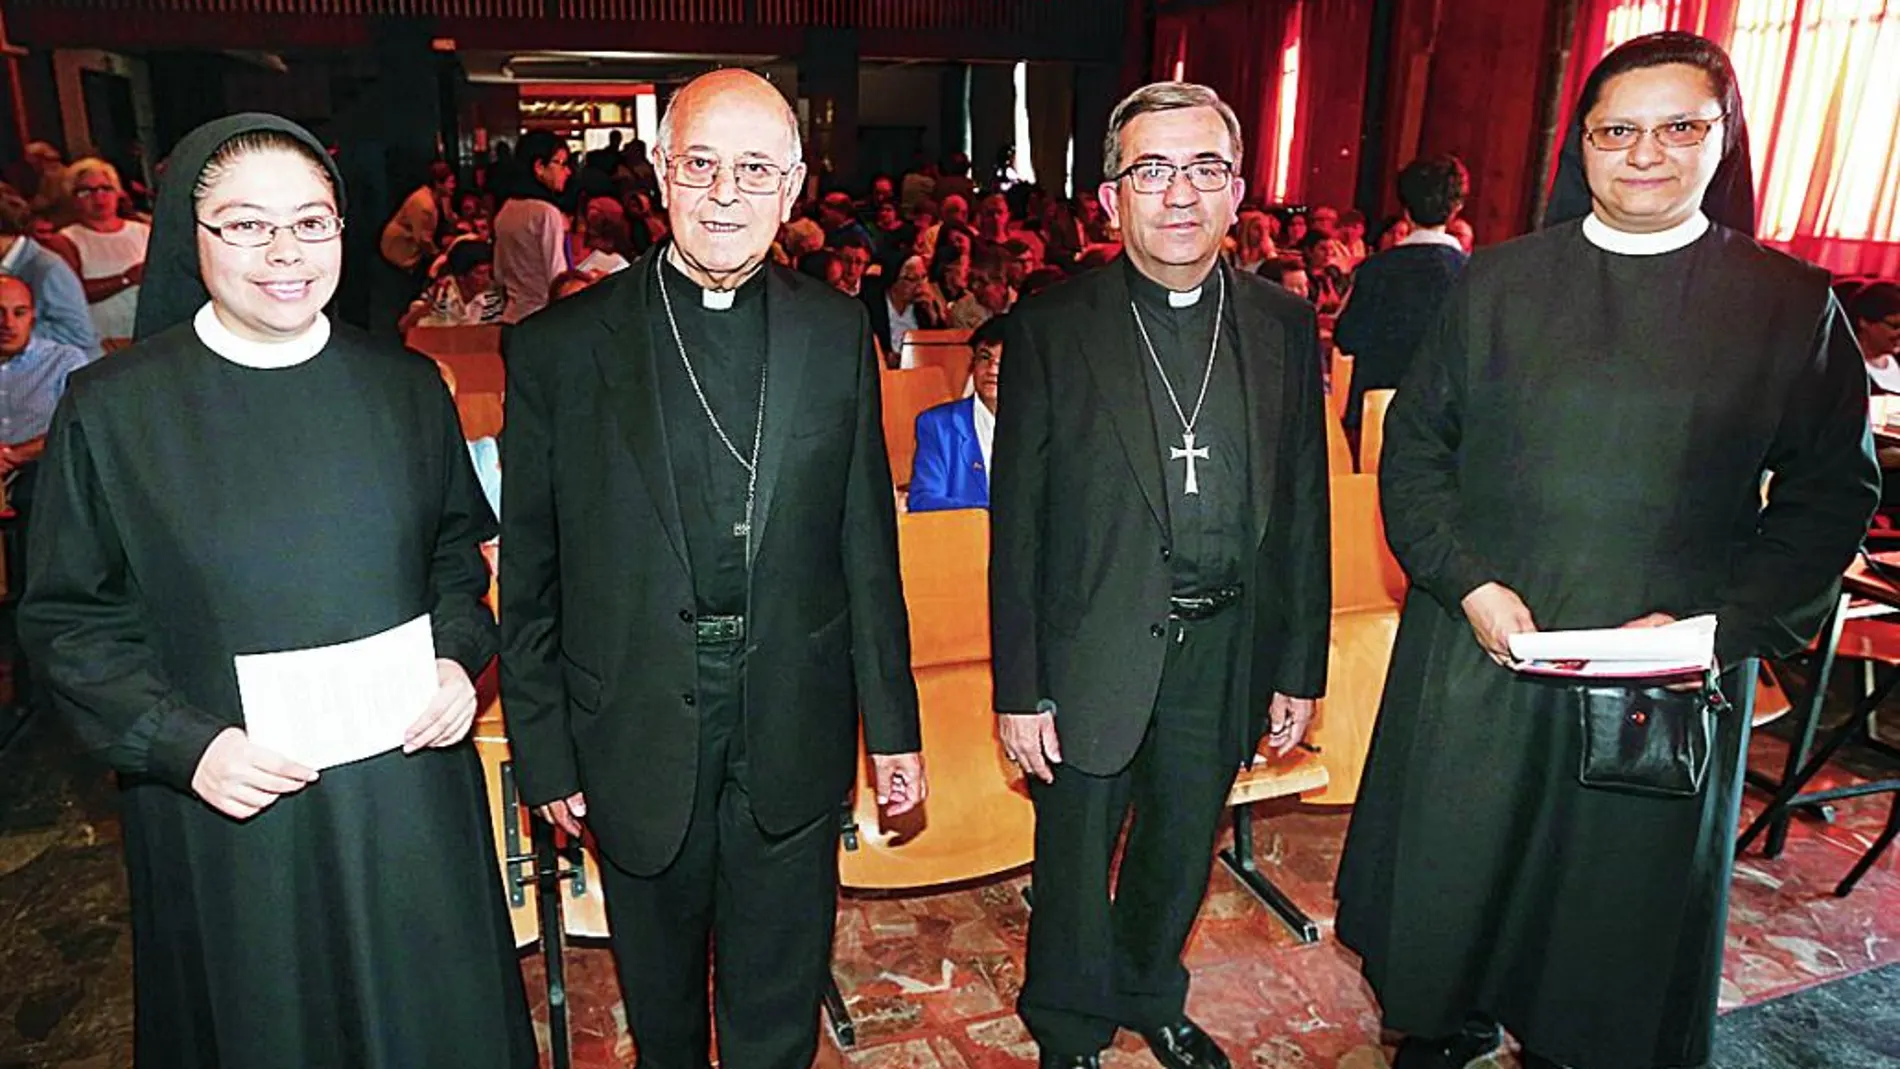 El cardenal arzobispo de Valladolid, Ricardo Blázquez, presenta, junto al obispo auxiliar de Valladolid, Luis Argüello, la Programación Pastoral Diocesana a más de 300 participantes en la jornada.